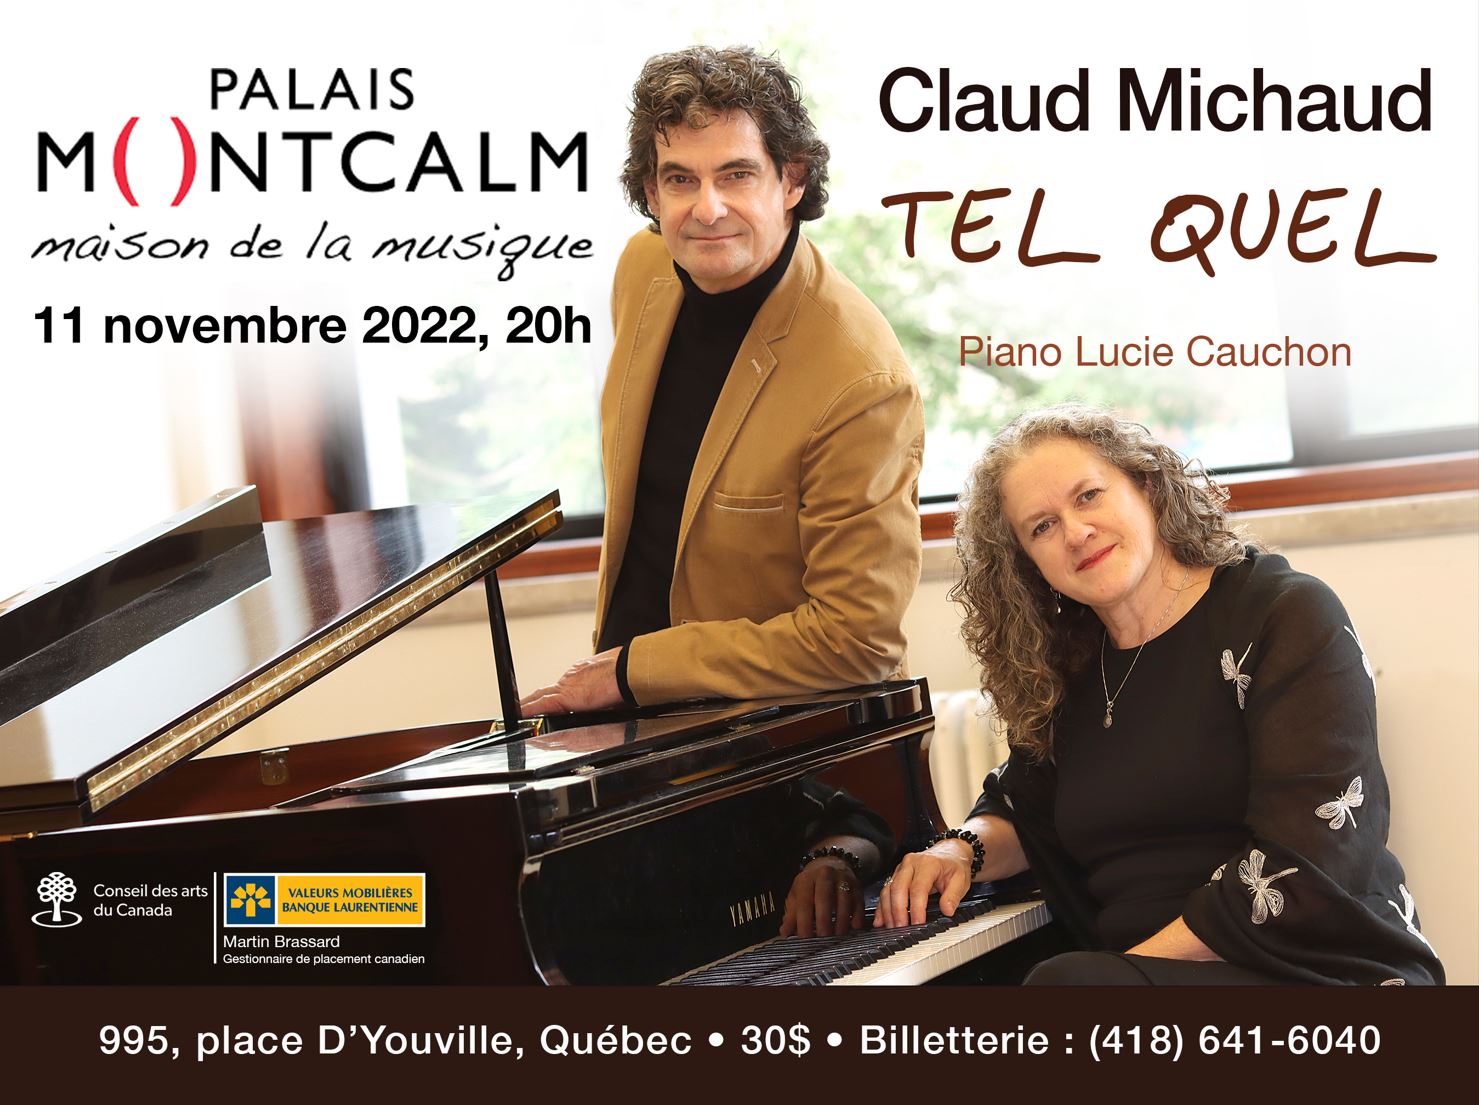 Claud Michaud Palais Montcalm 11 novembre 2022